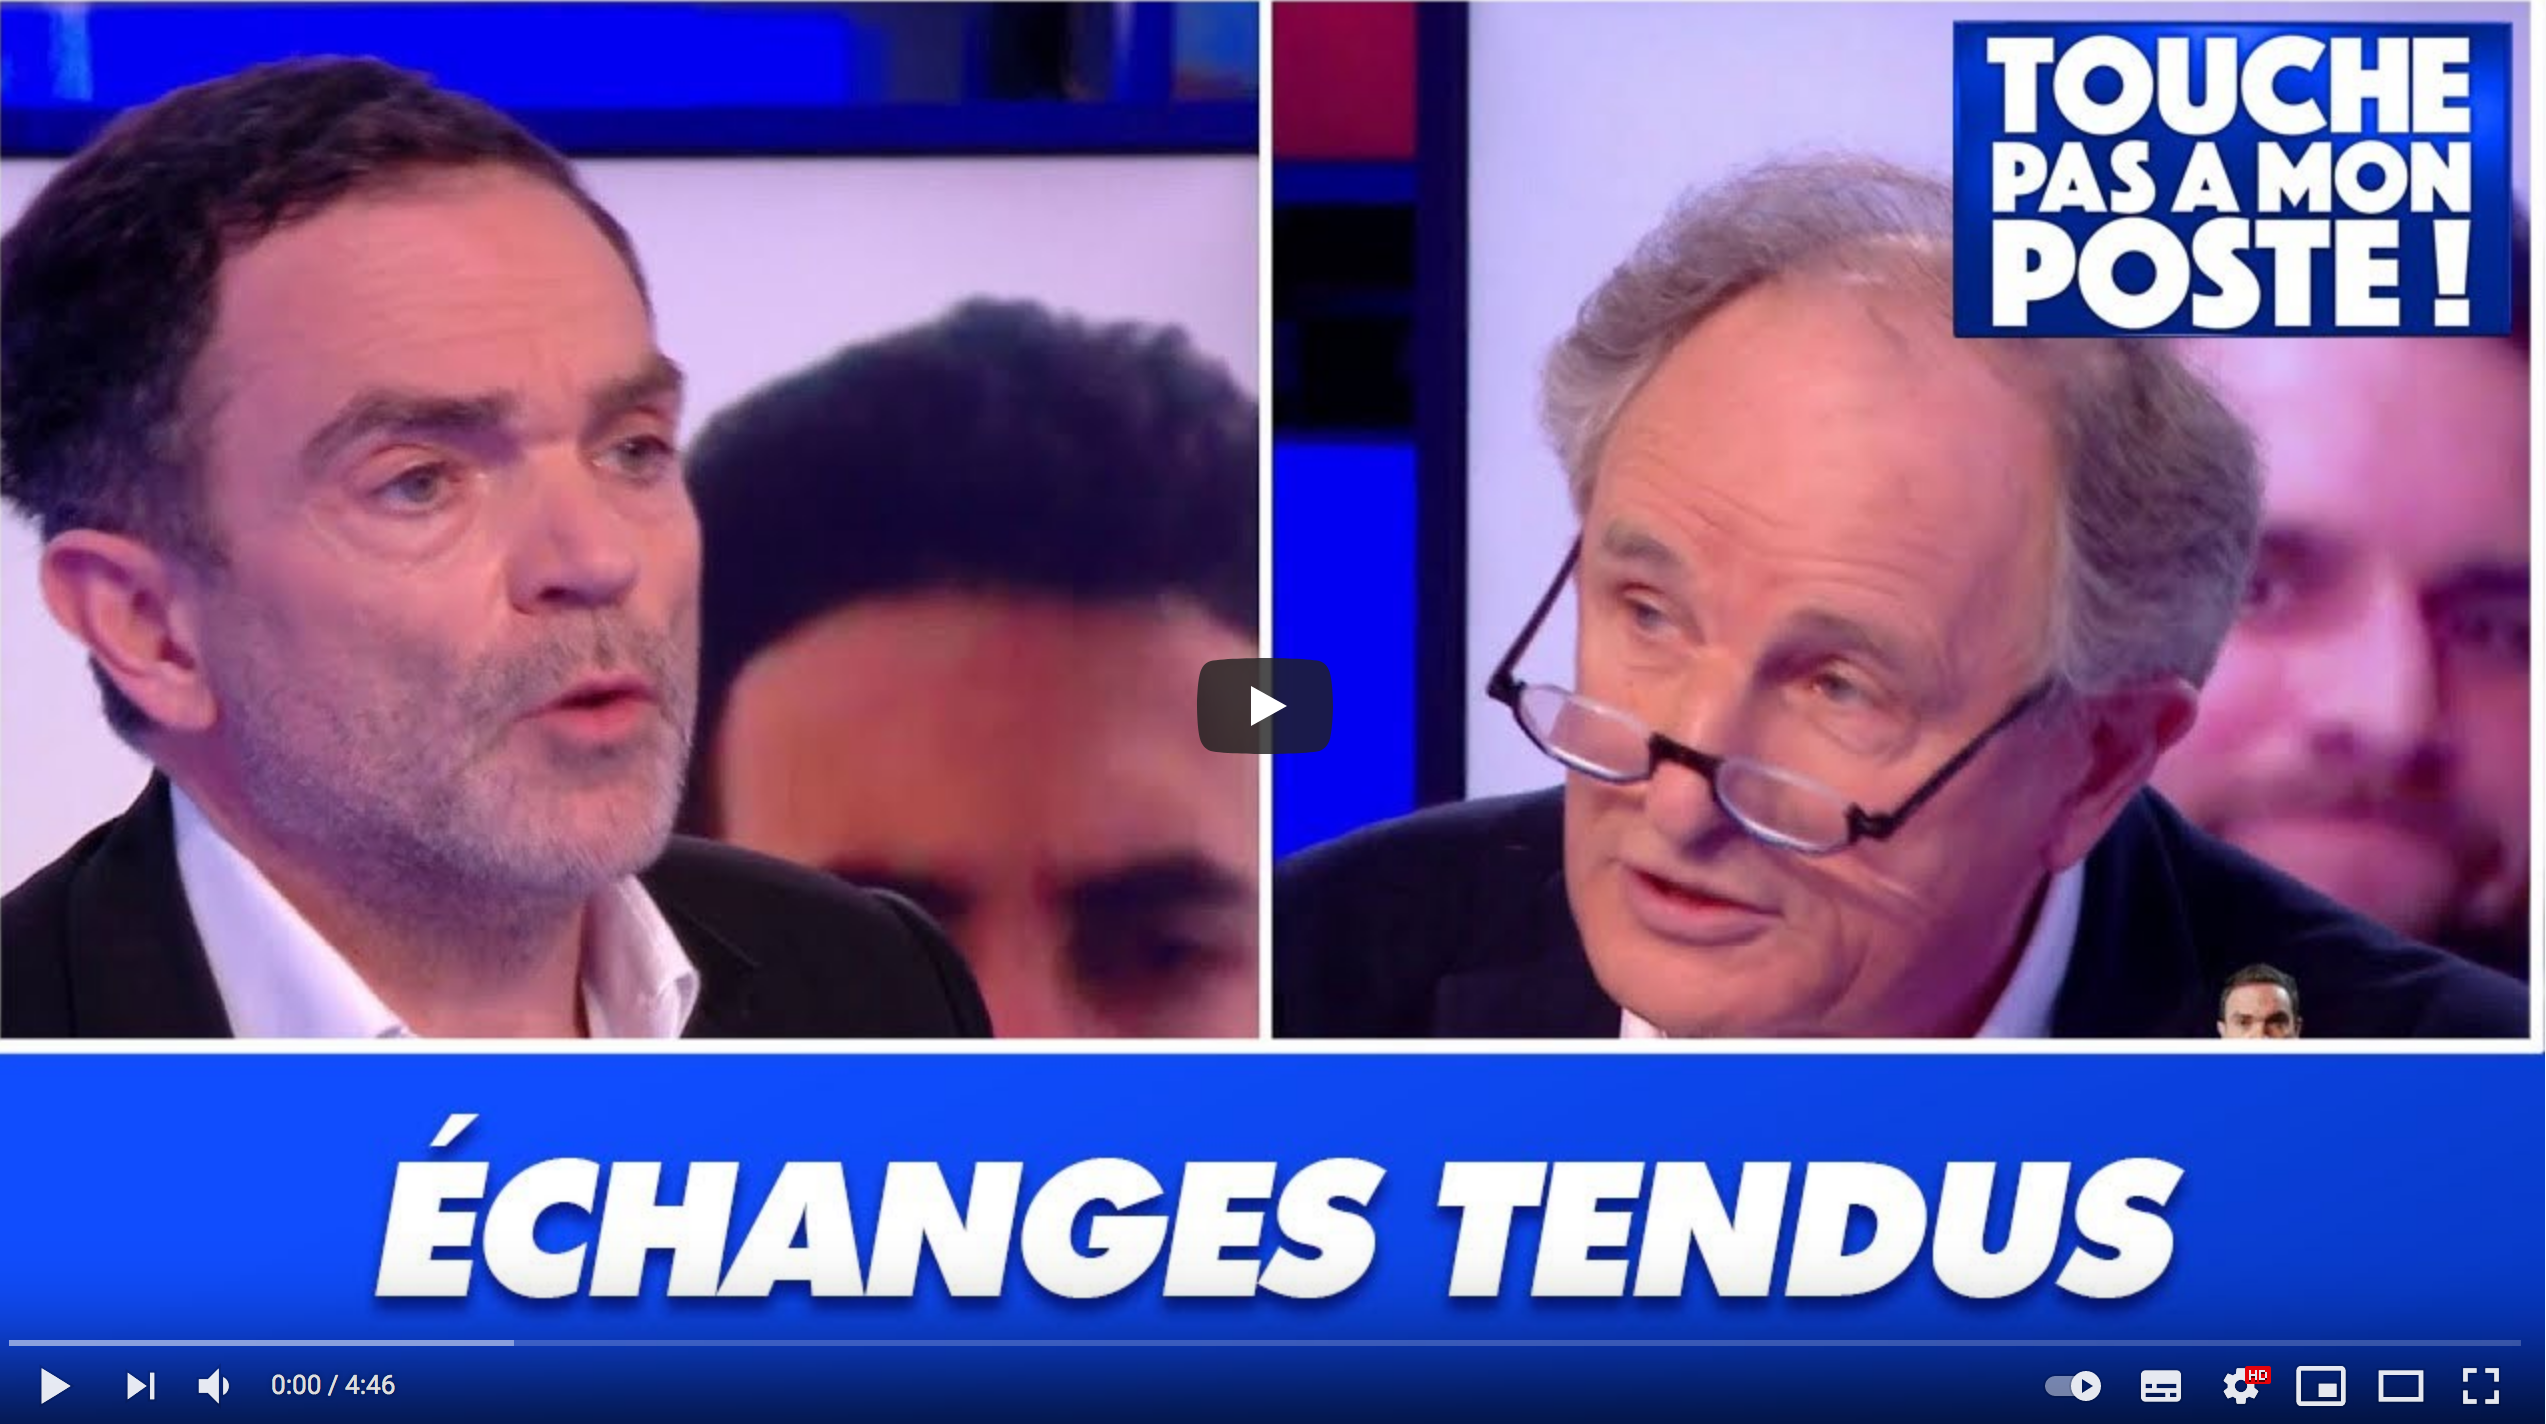 Le face-à-face tendu entre Yann Moix et Jean-Paul Hamon après les propos polémiques du chroniqueur (VIDÉO)